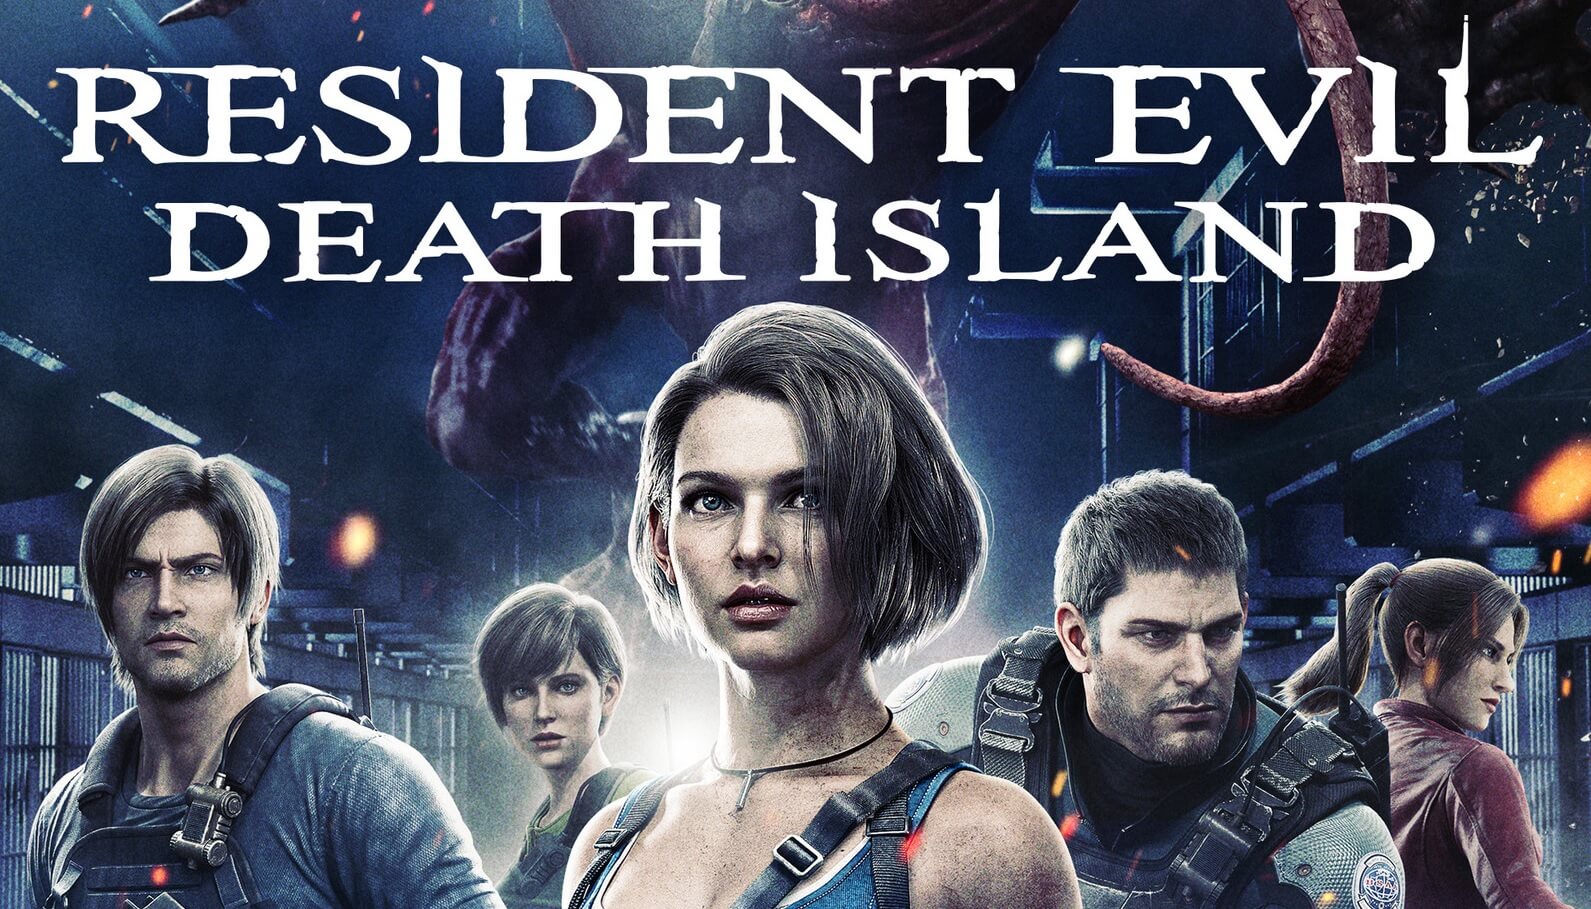 La película Resident Evil: Death Island se estrenará este 25 de julio